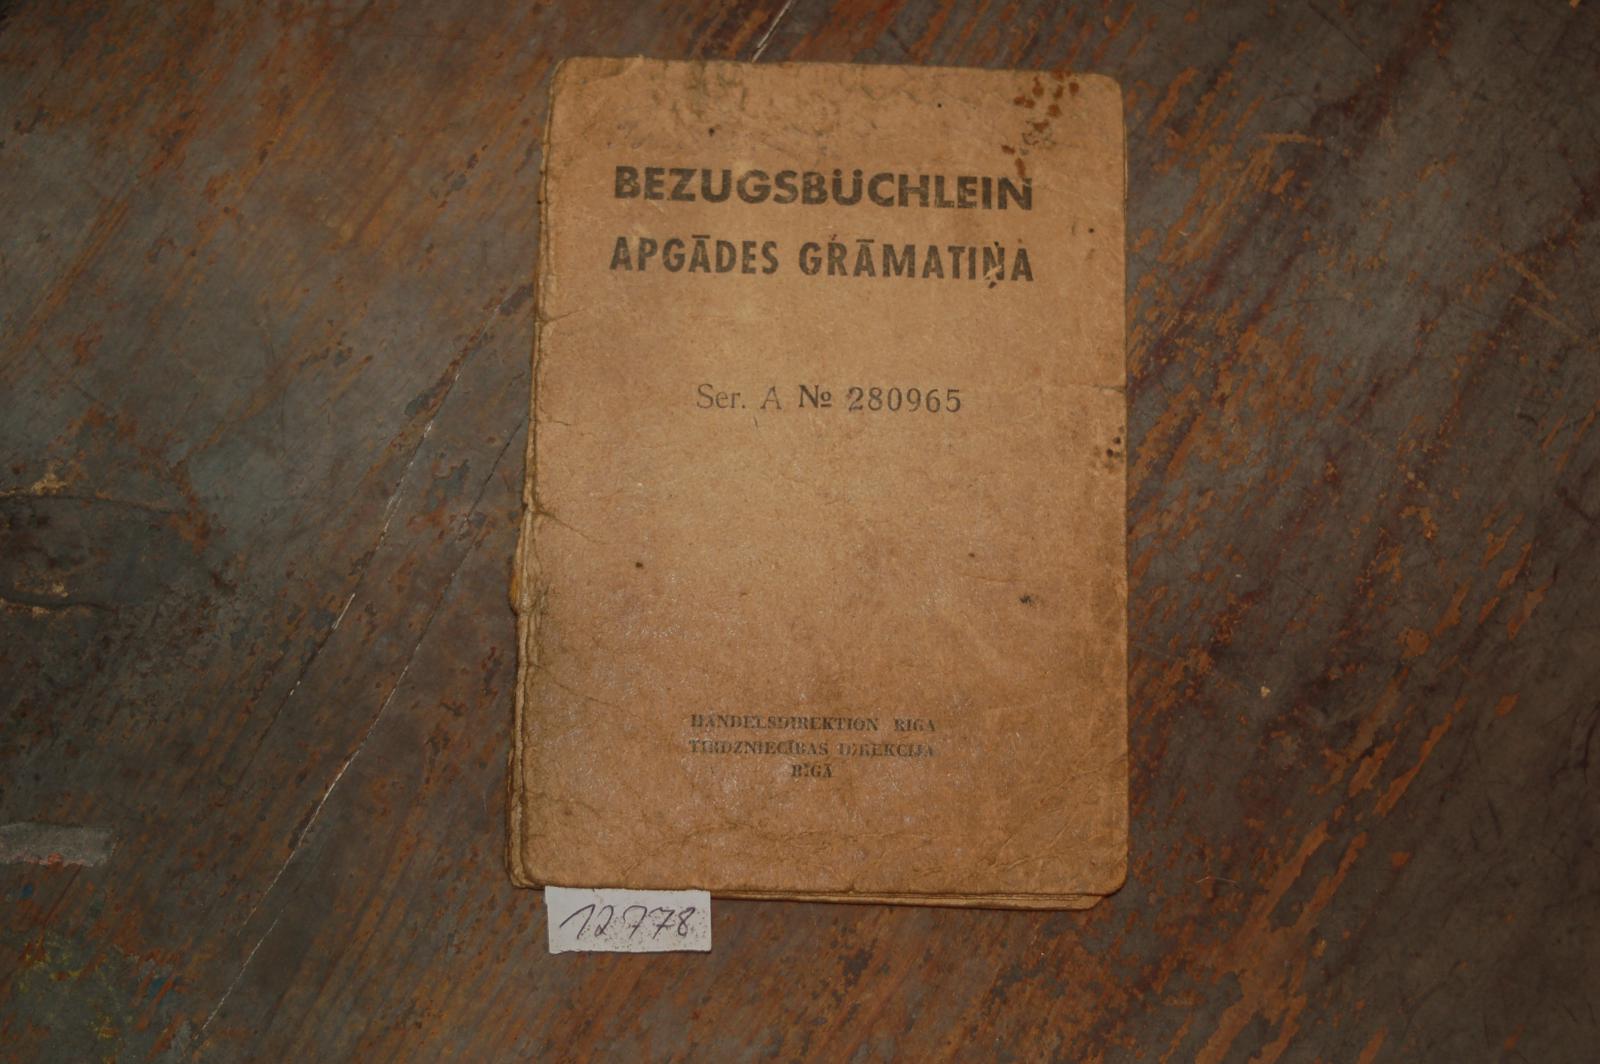 Handelsdirektion Riga  Bezugsbüchlein mit Eintragungen und Stempel von 1941 - 1945 